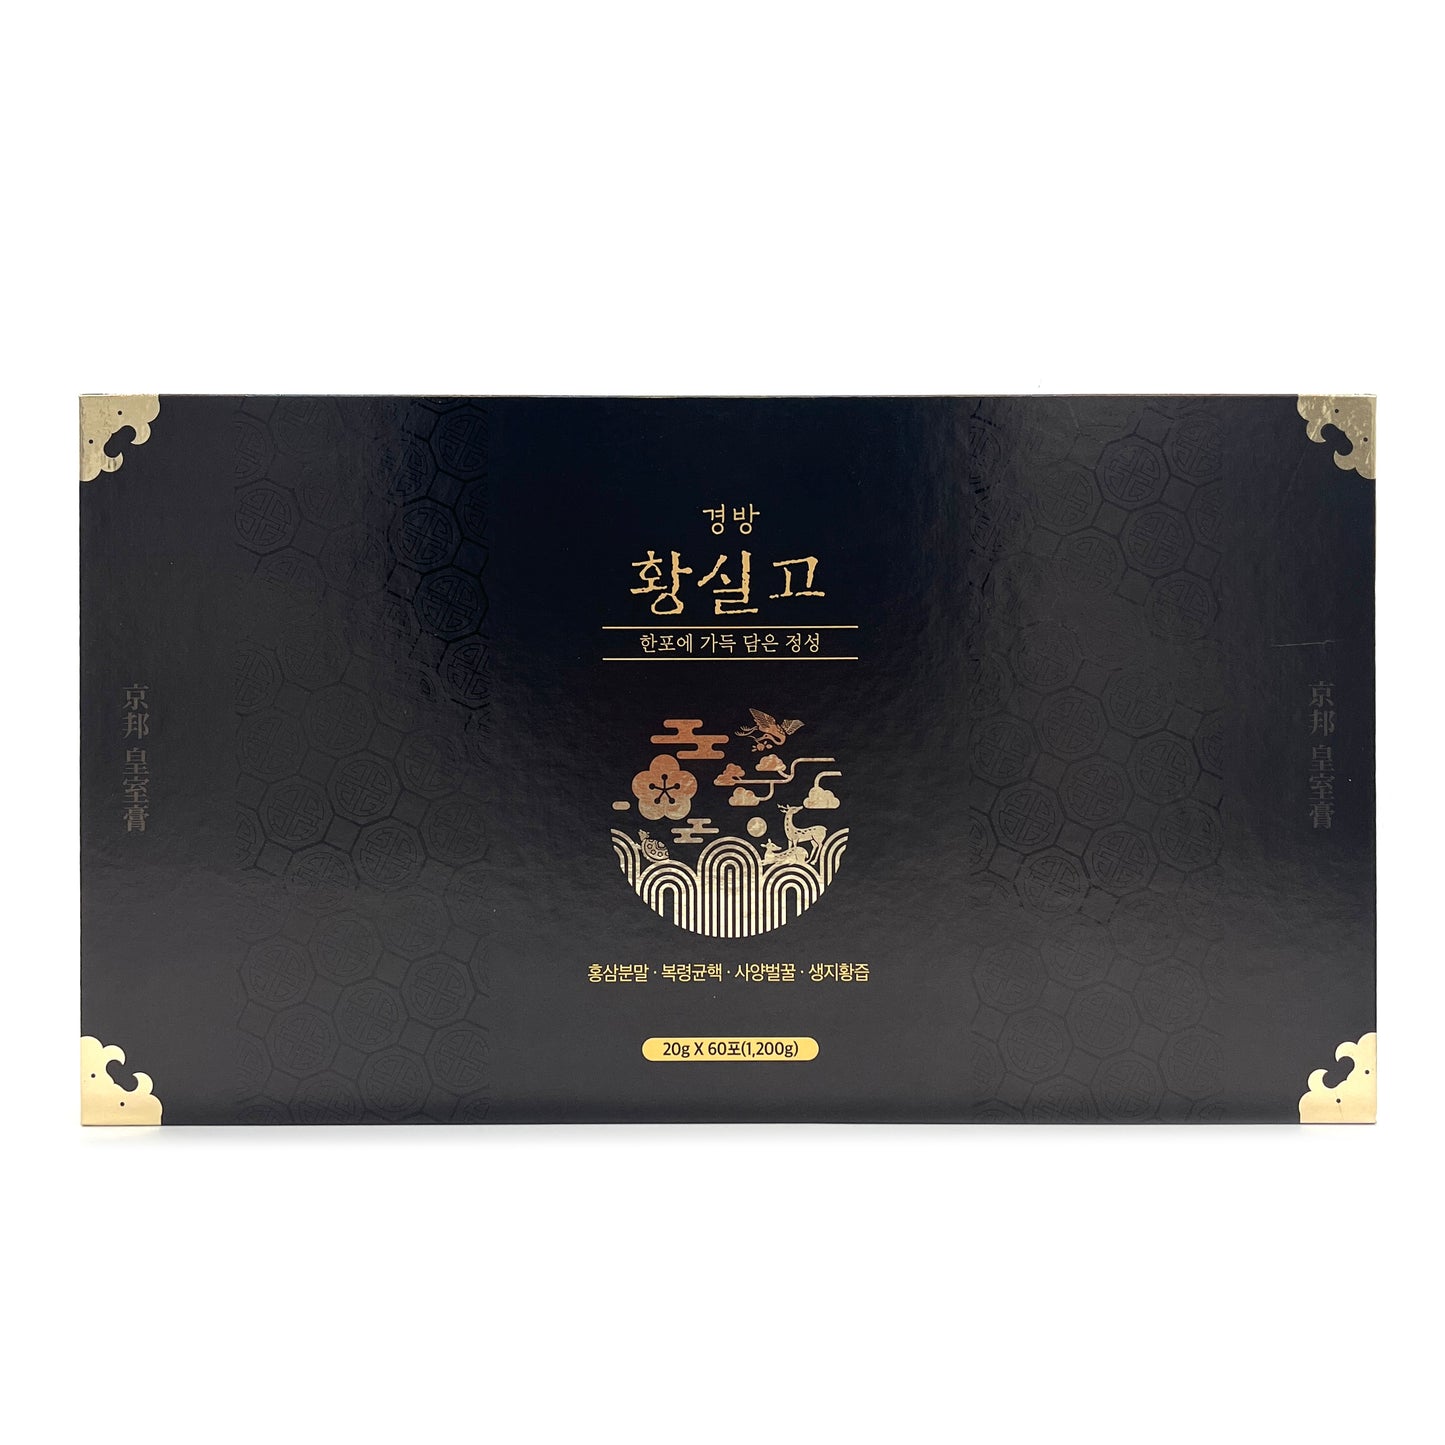 [Kyungbang] Hwangsilgo Stick (20g x60 1,200g)